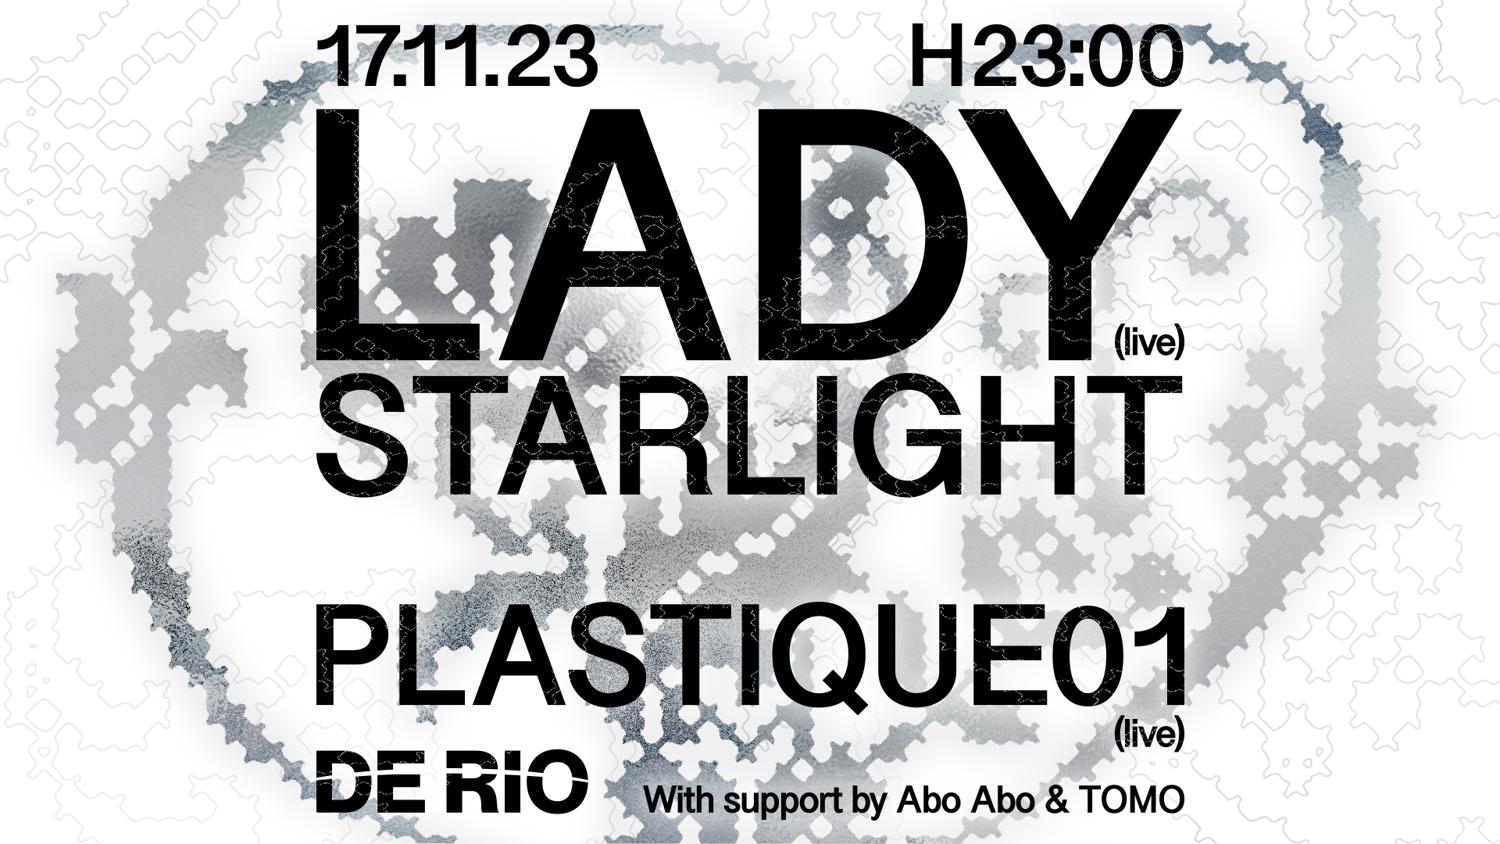 De Rio Invites Lady Starlight